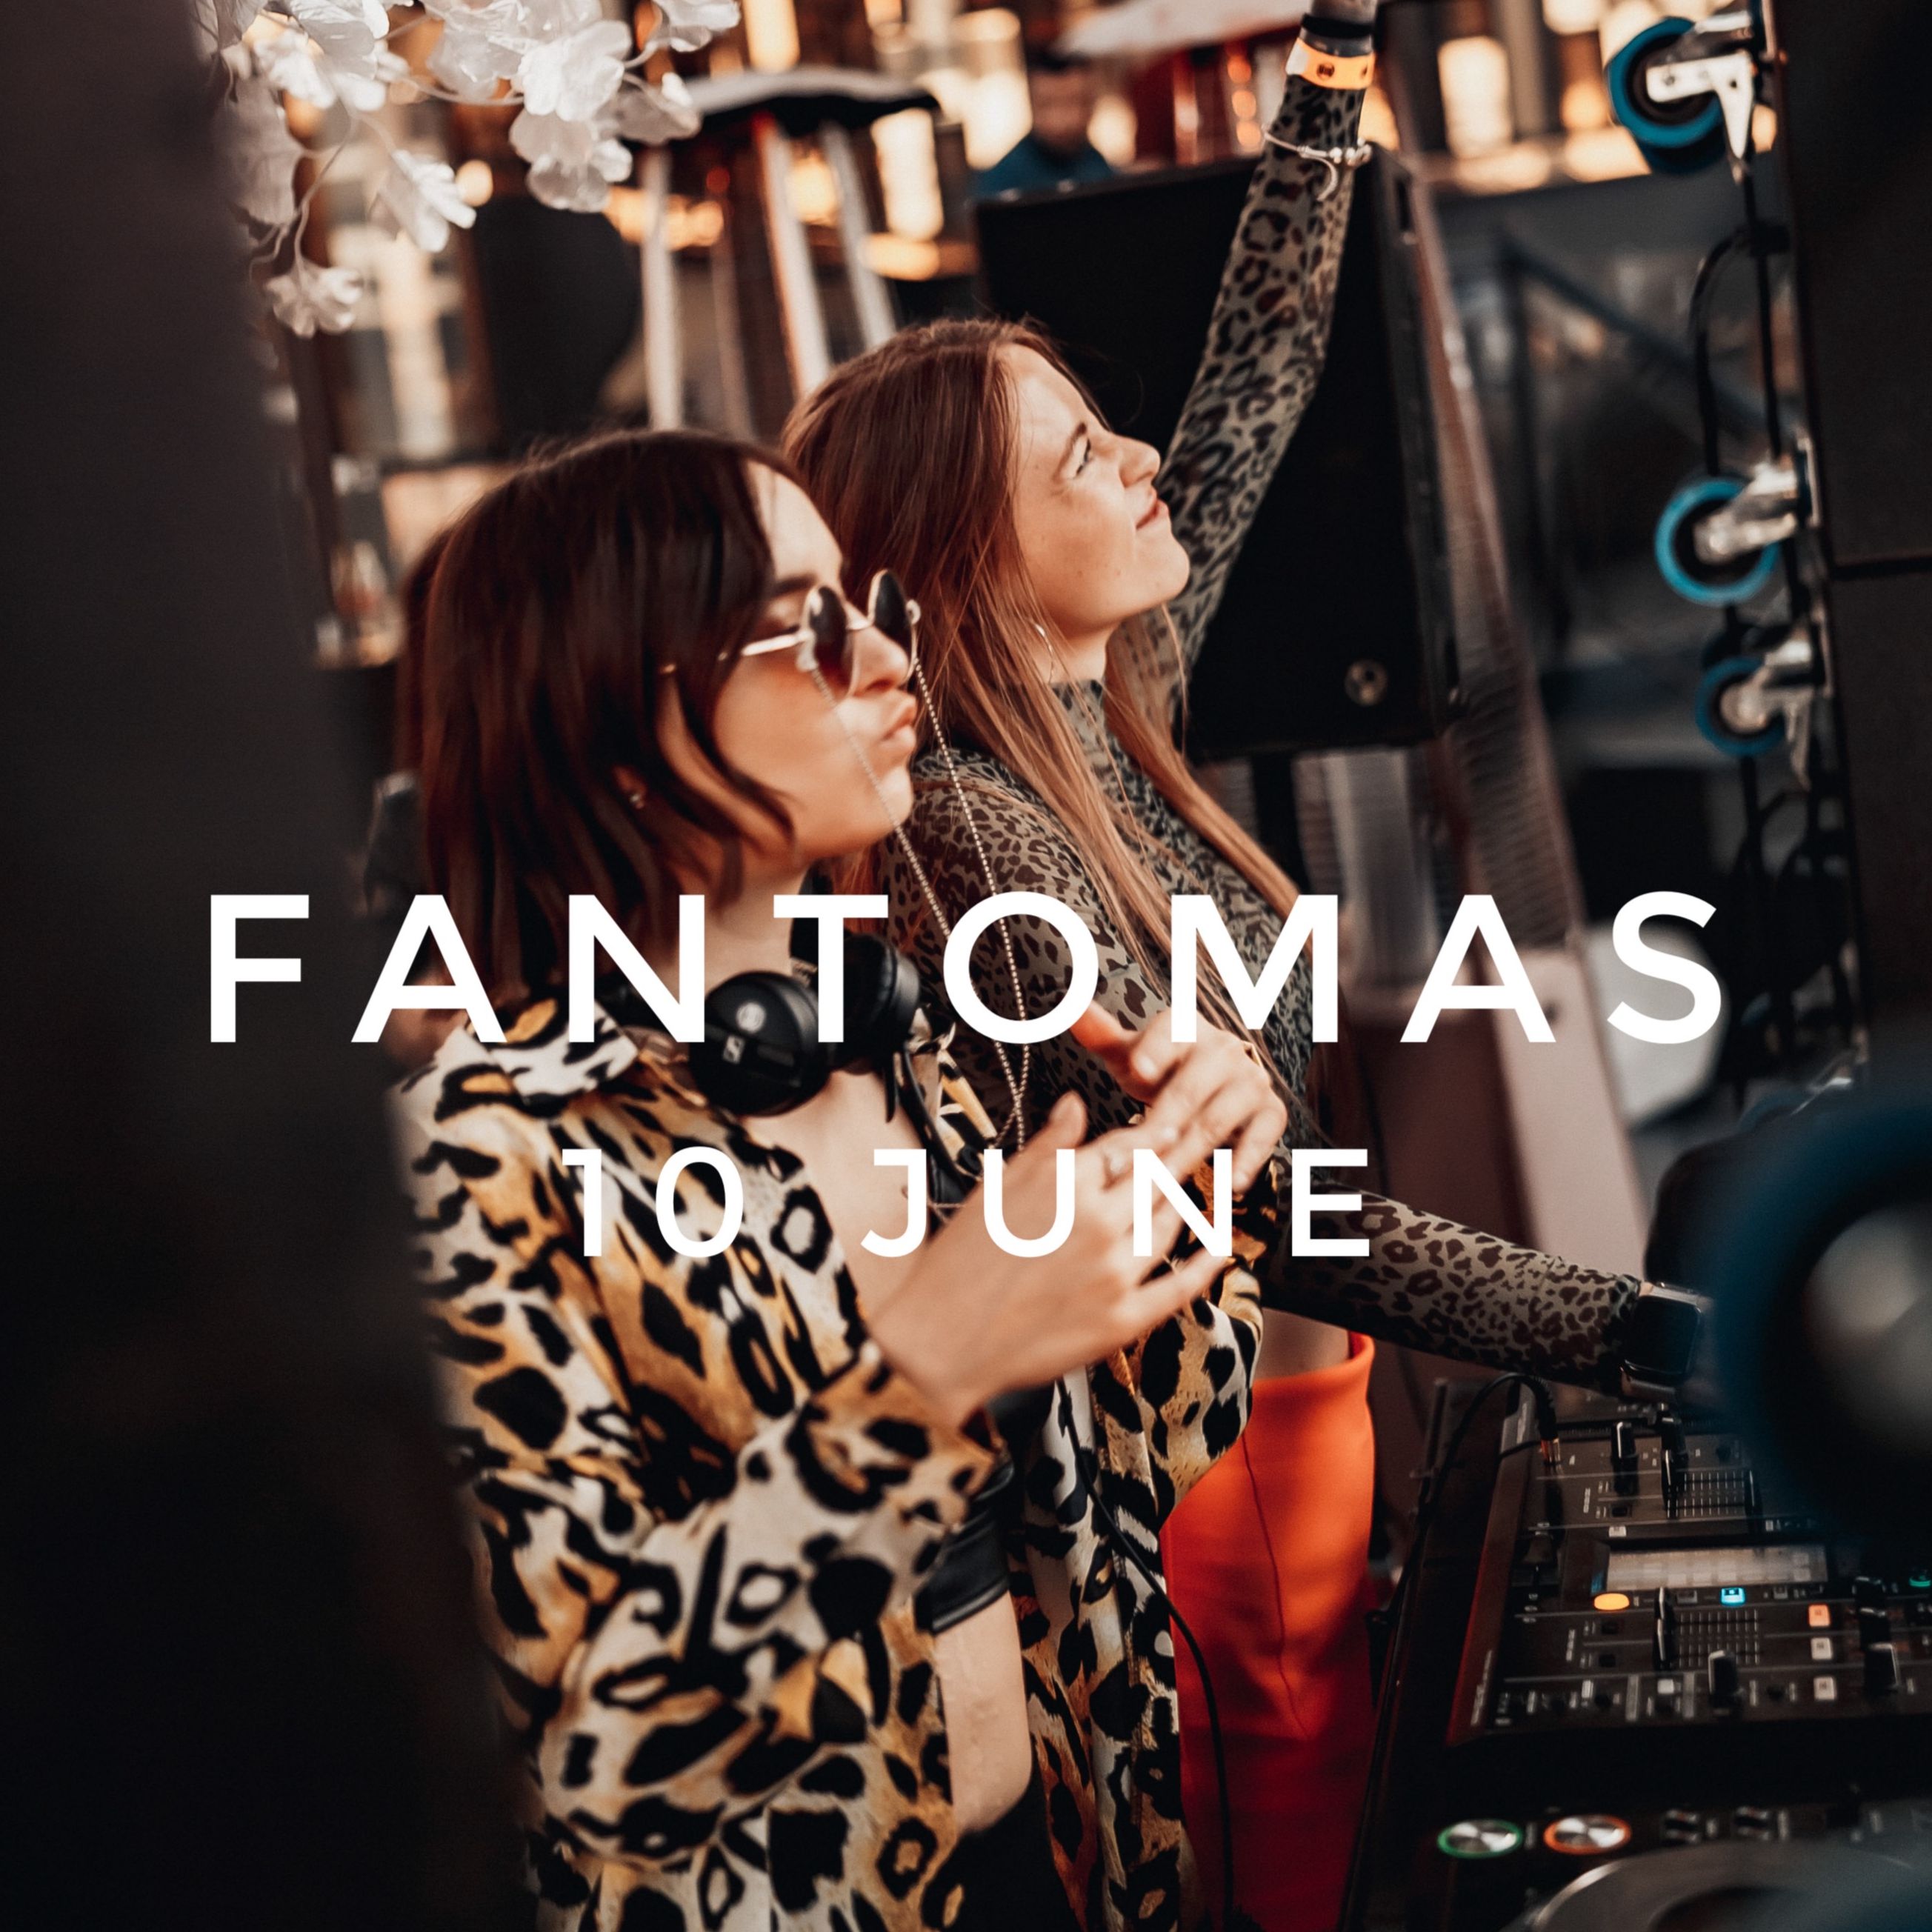 Aflaai Natasha Wax & Sony Vibe - @Fantomas Rooftop 10.06